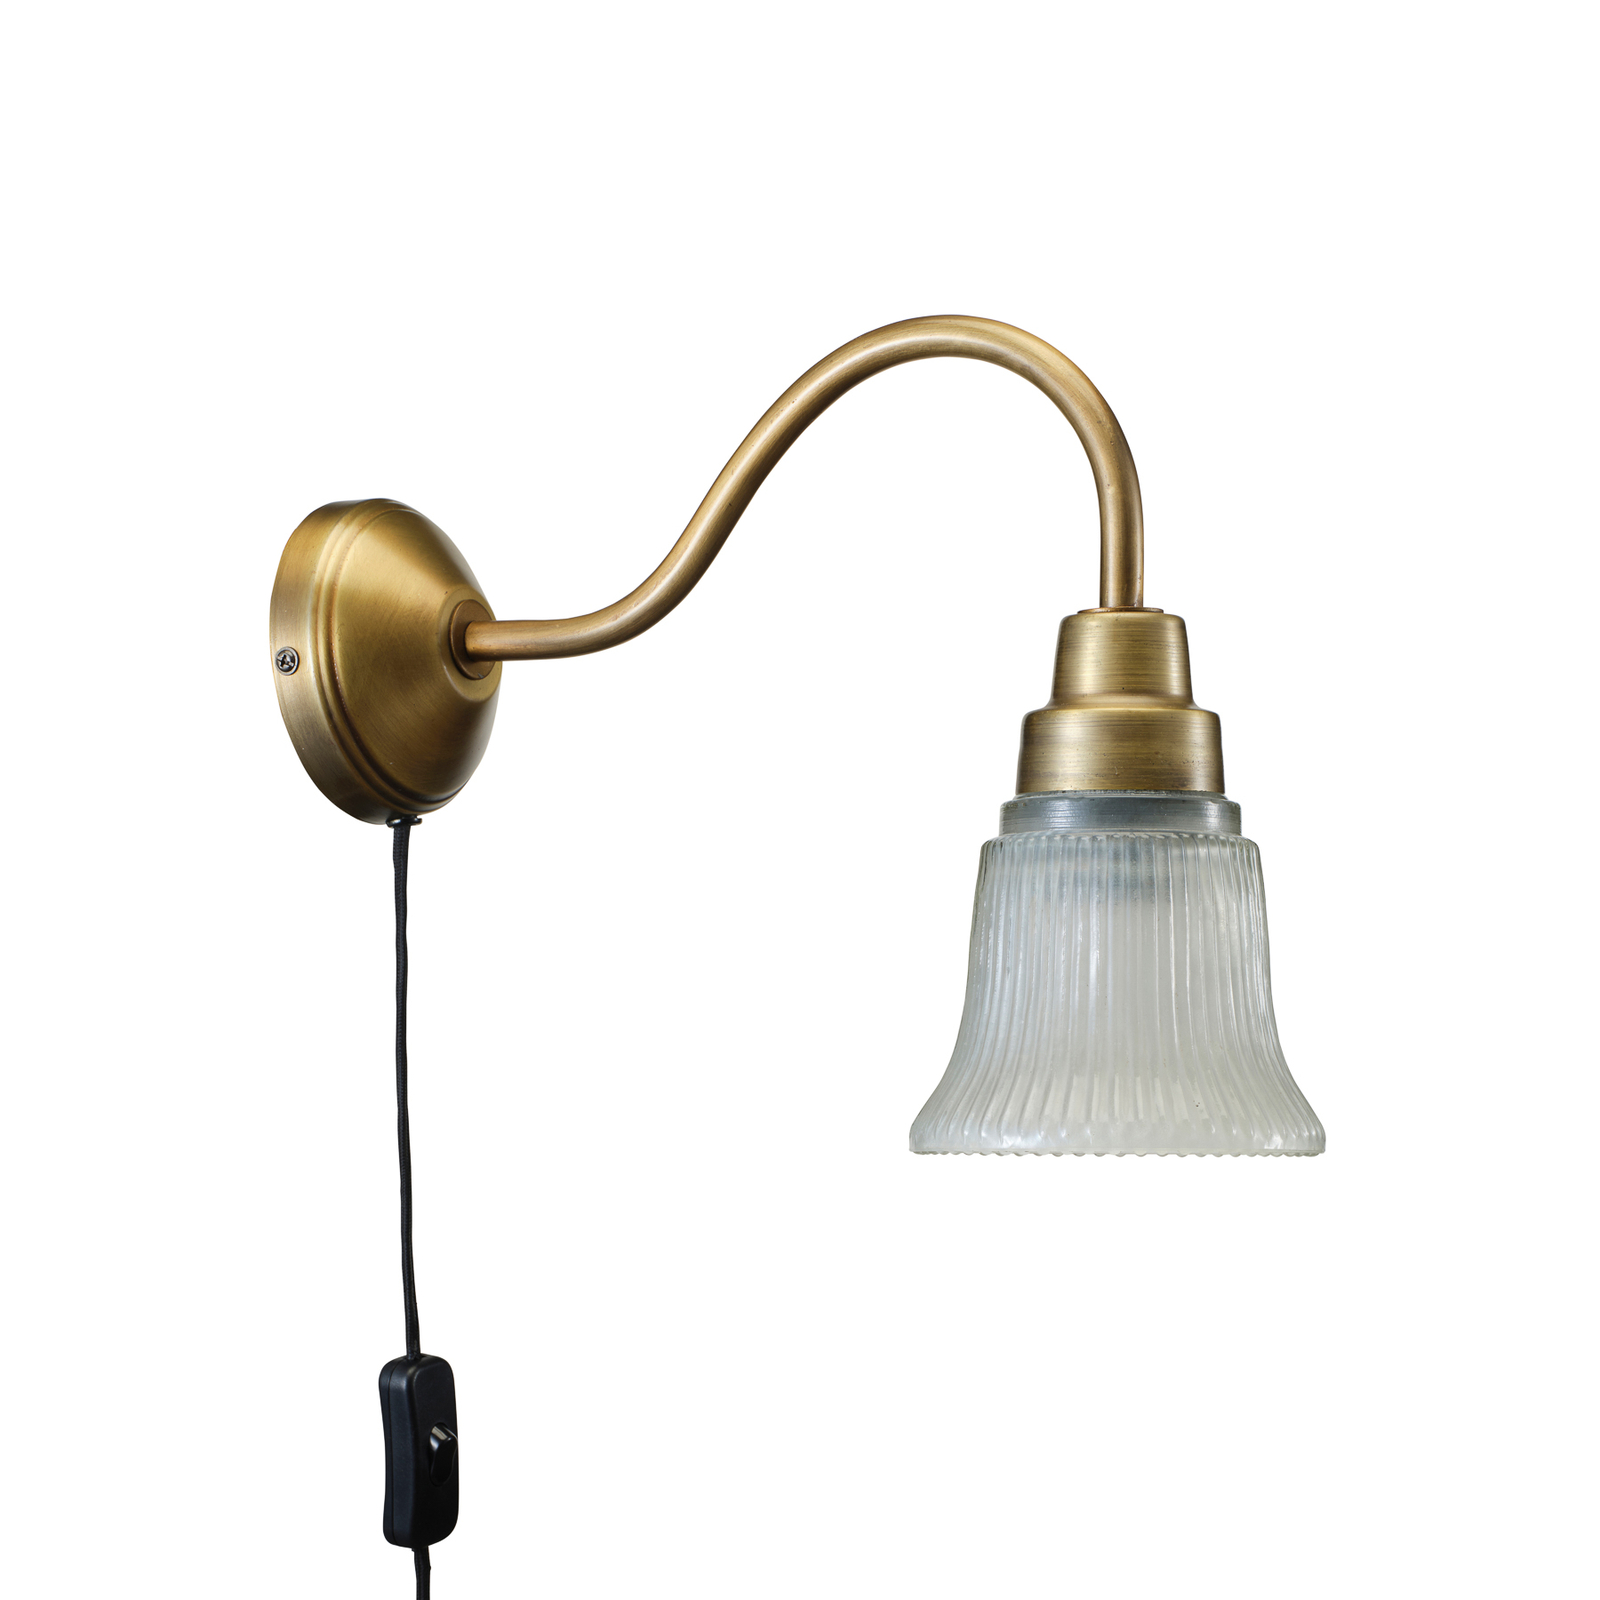 PR Home Emmi wall light, antique brass colour, Ø 12 cm